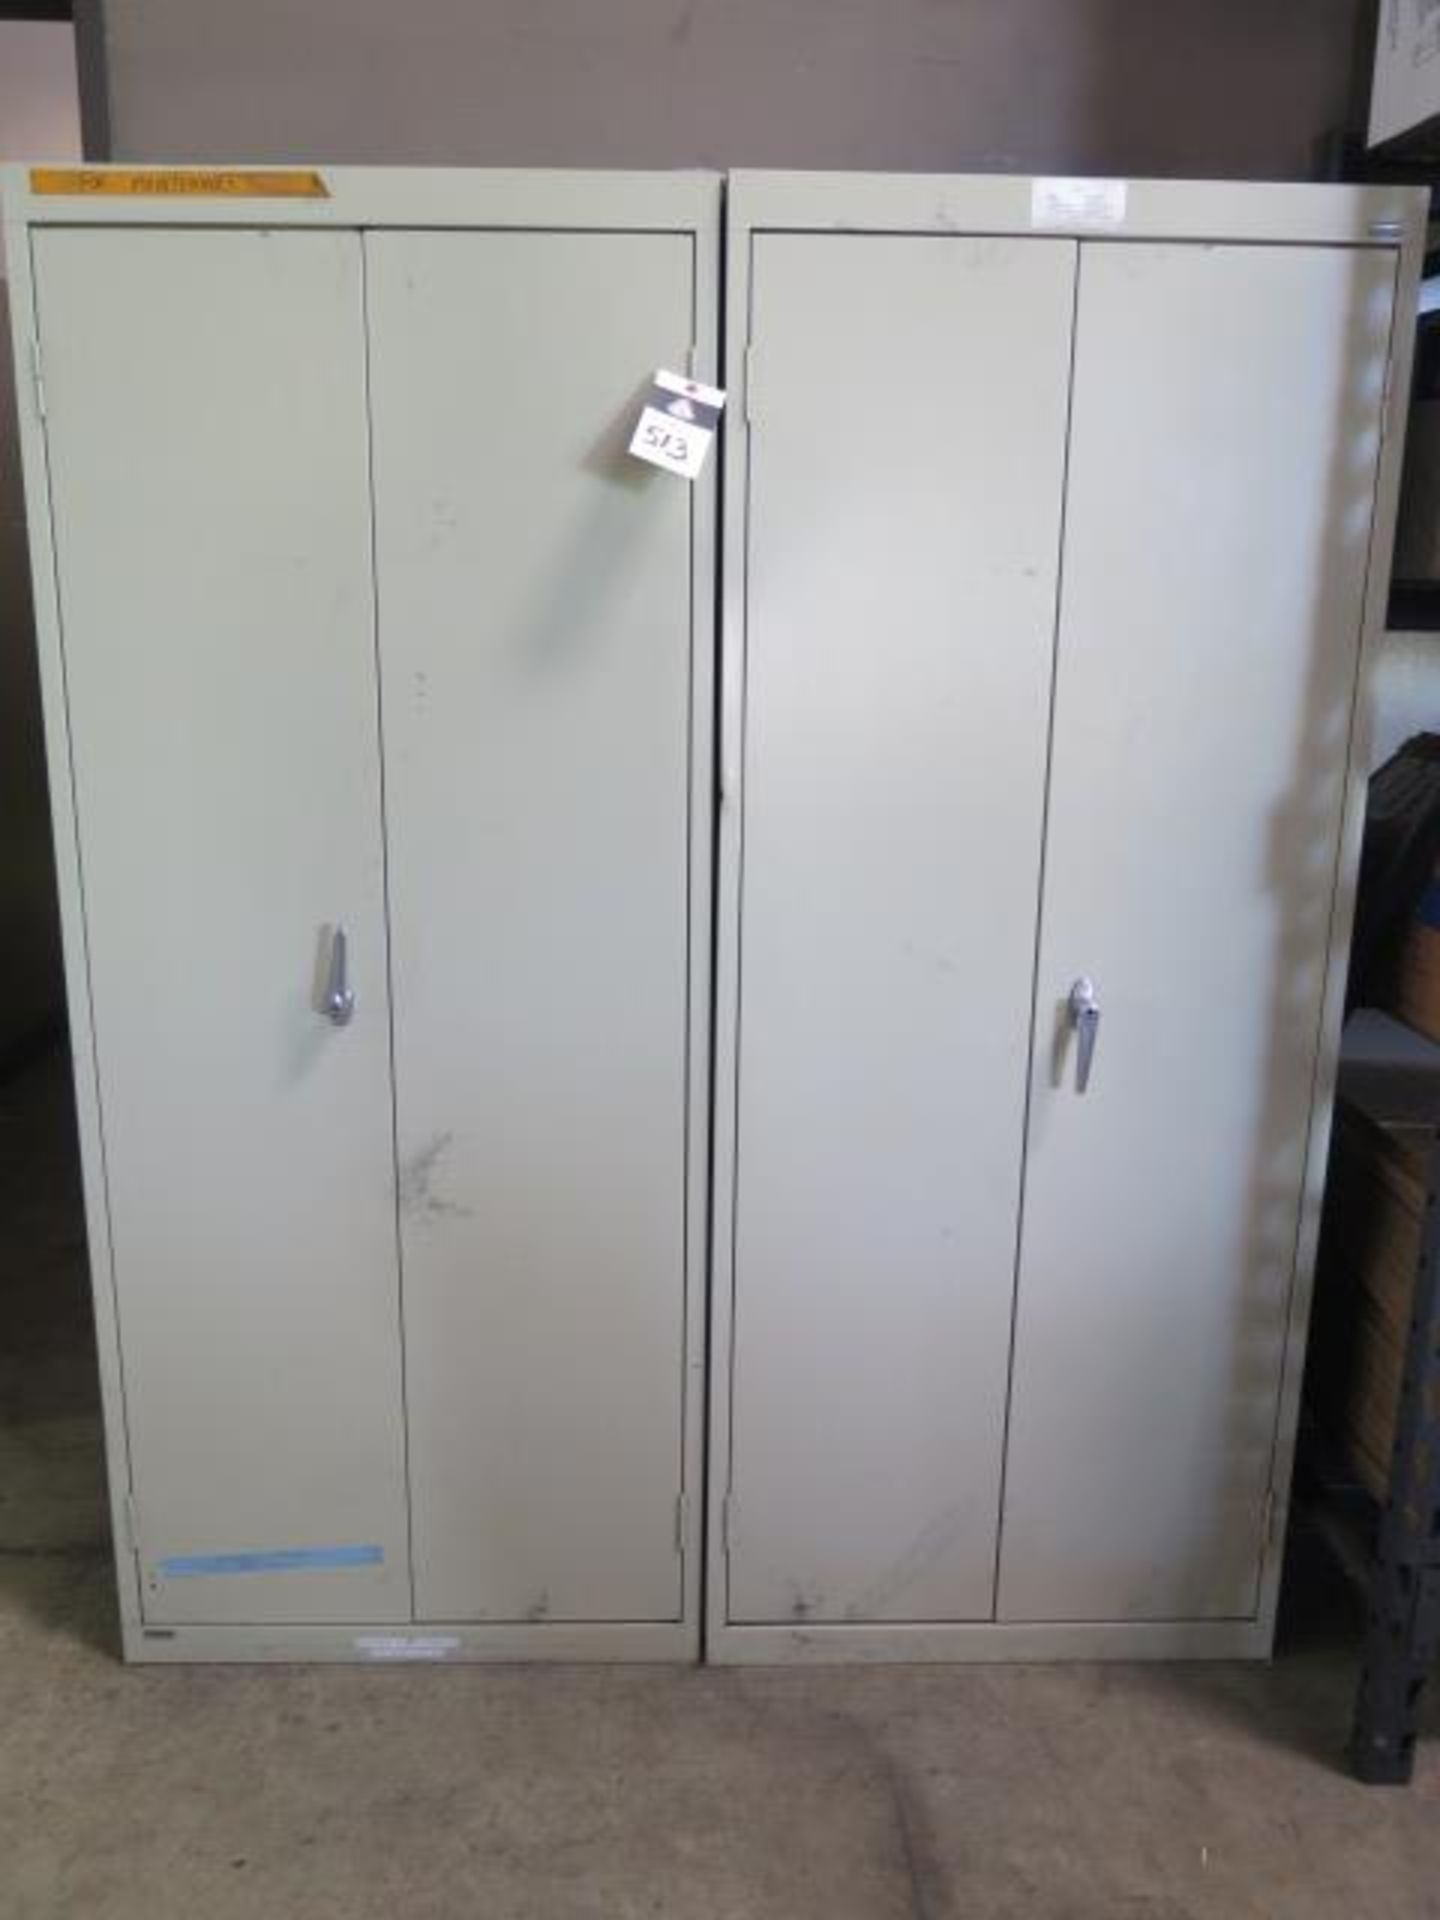 Shop Supplies w/ (2) Storage Cabinets